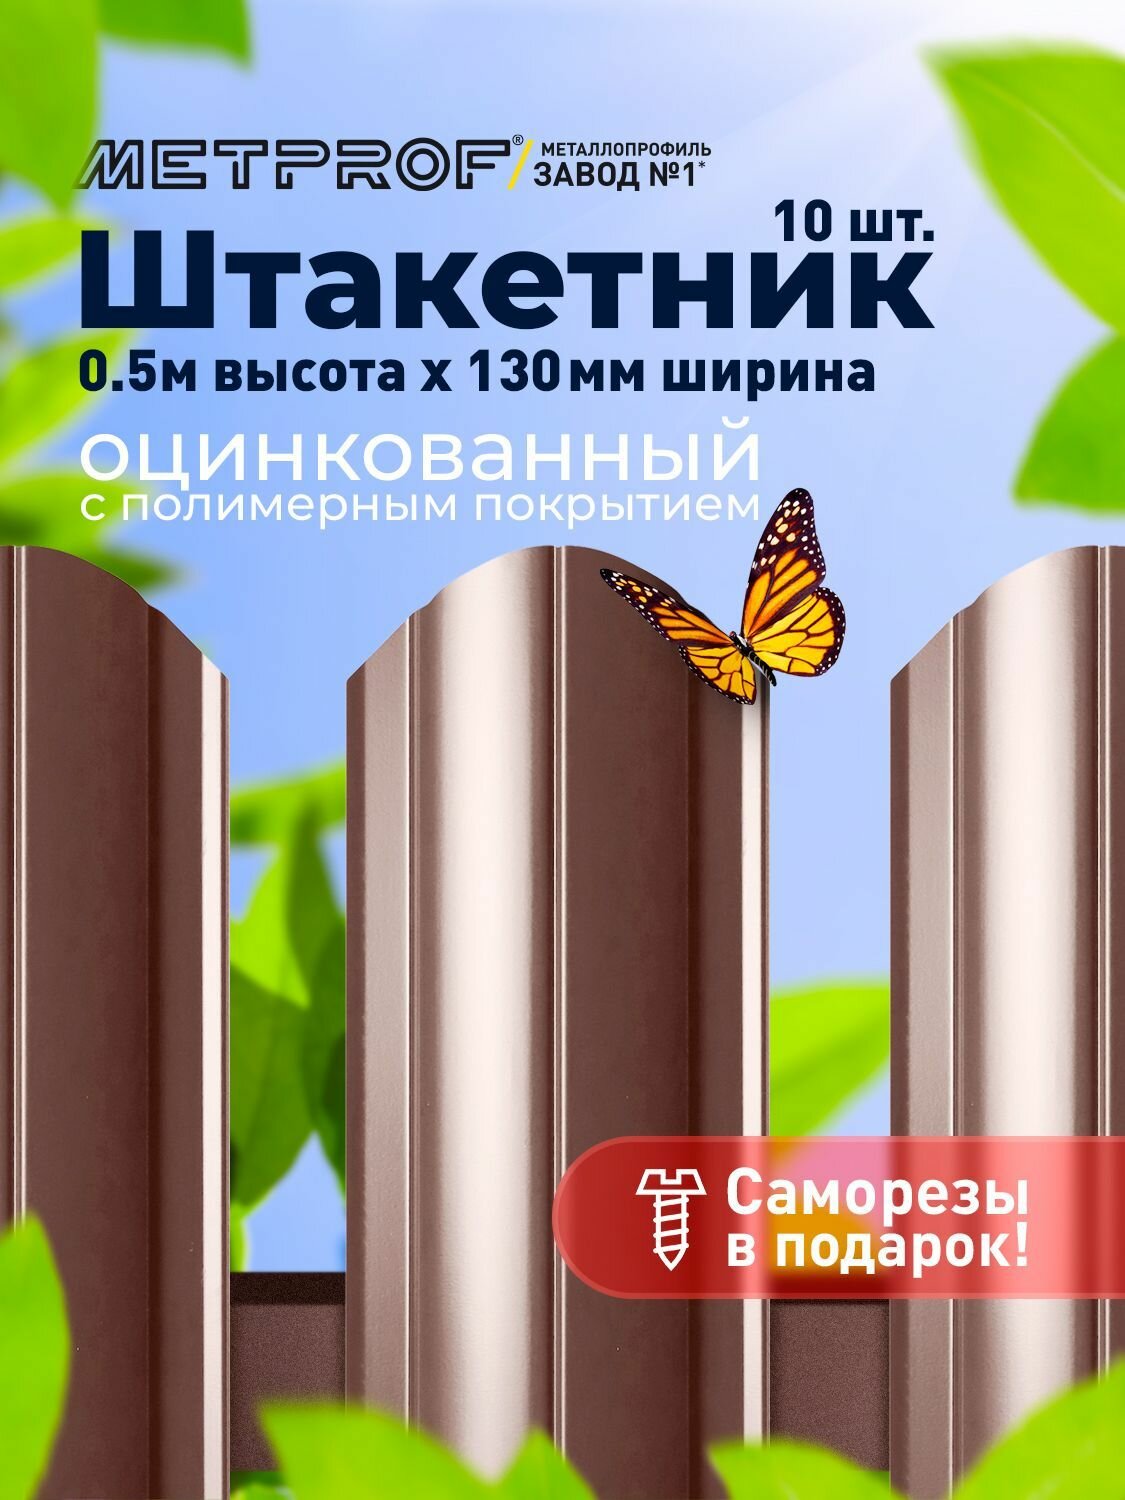 Евроштакетник Line металлический/ заборы/ 0.45 толщина цвет 8017/ 8017 (Шоколад) 10 шт. 0.5 м